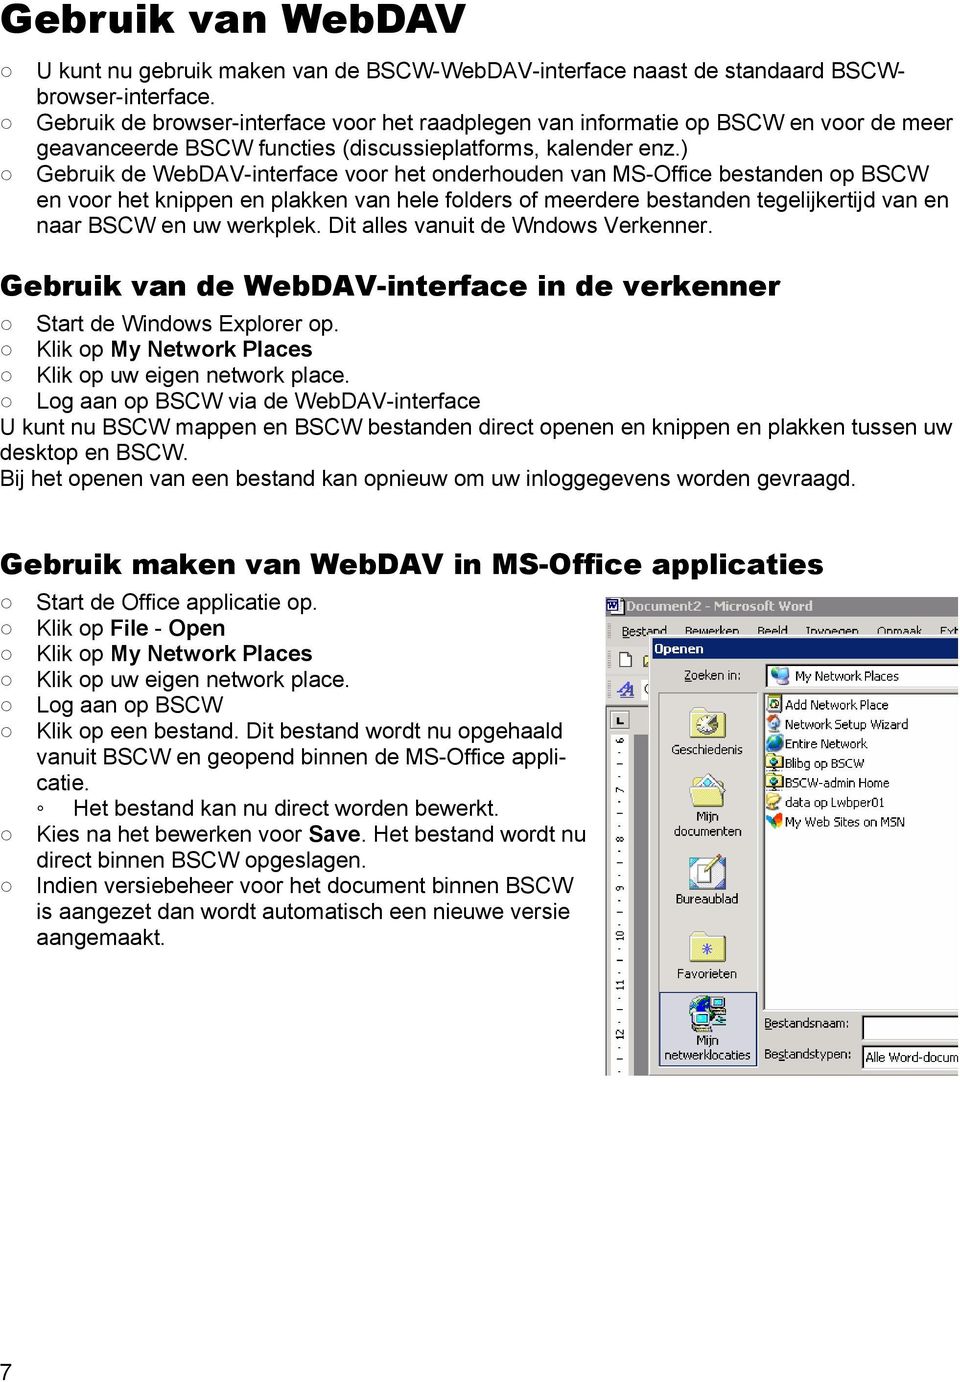 ) Gebruik de WebDAV-interface voor het onderhouden van MS-Office bestanden op BSCW en voor het knippen en plakken van hele folders of meerdere bestanden tegelijkertijd van en naar BSCW en uw werkplek.